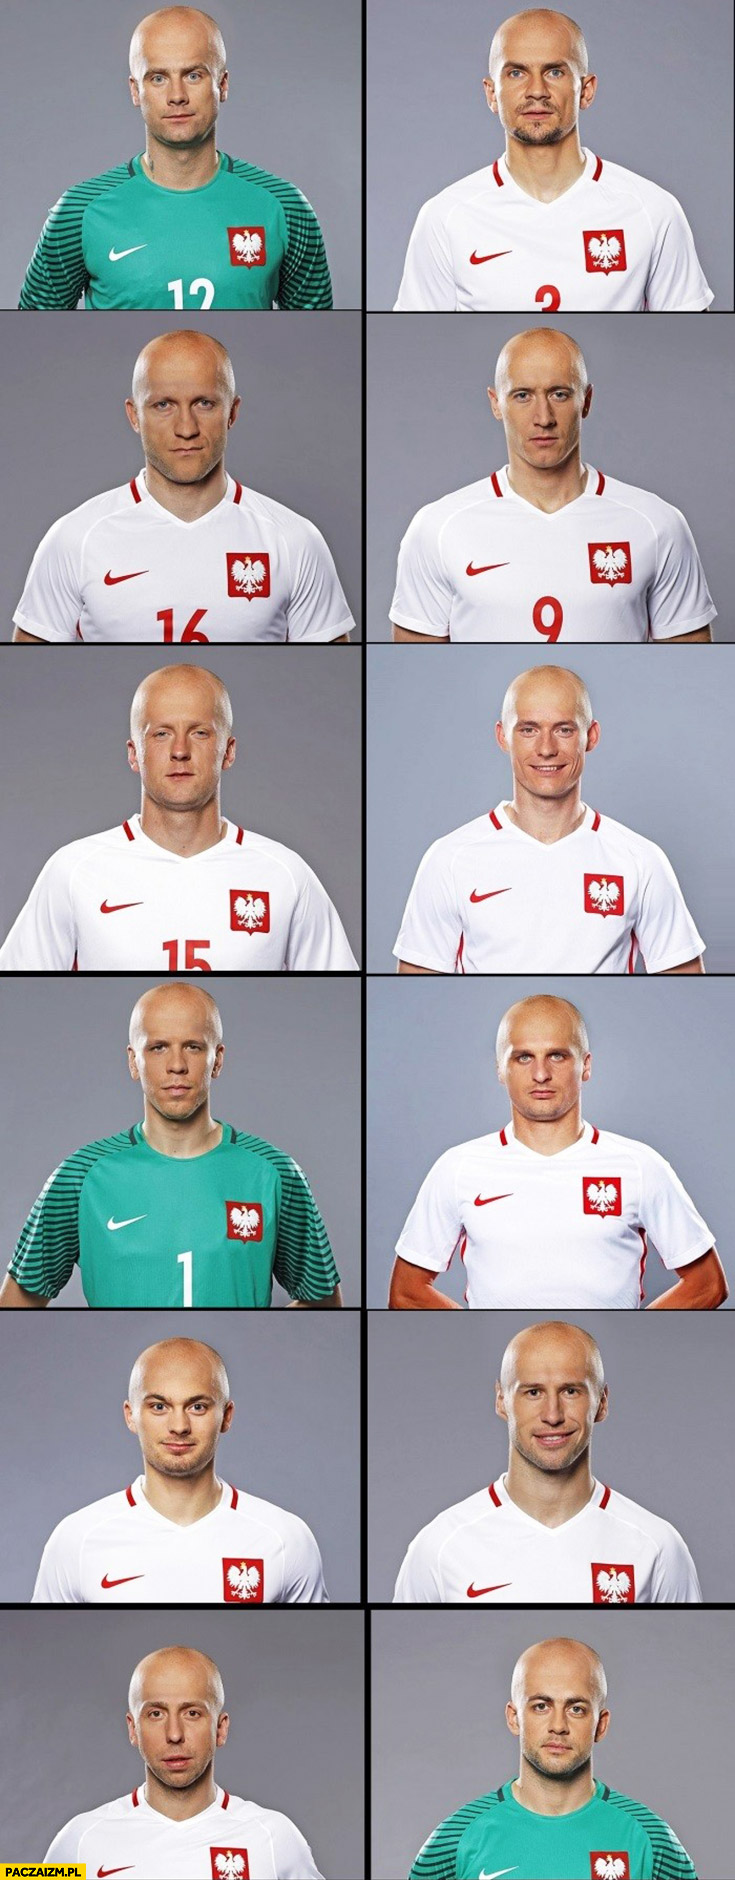 Reprezentacja Polski jak by wyglądali łysi piłkarze łyse głowy fryzura „na Pazdana” przeróbka photoshop